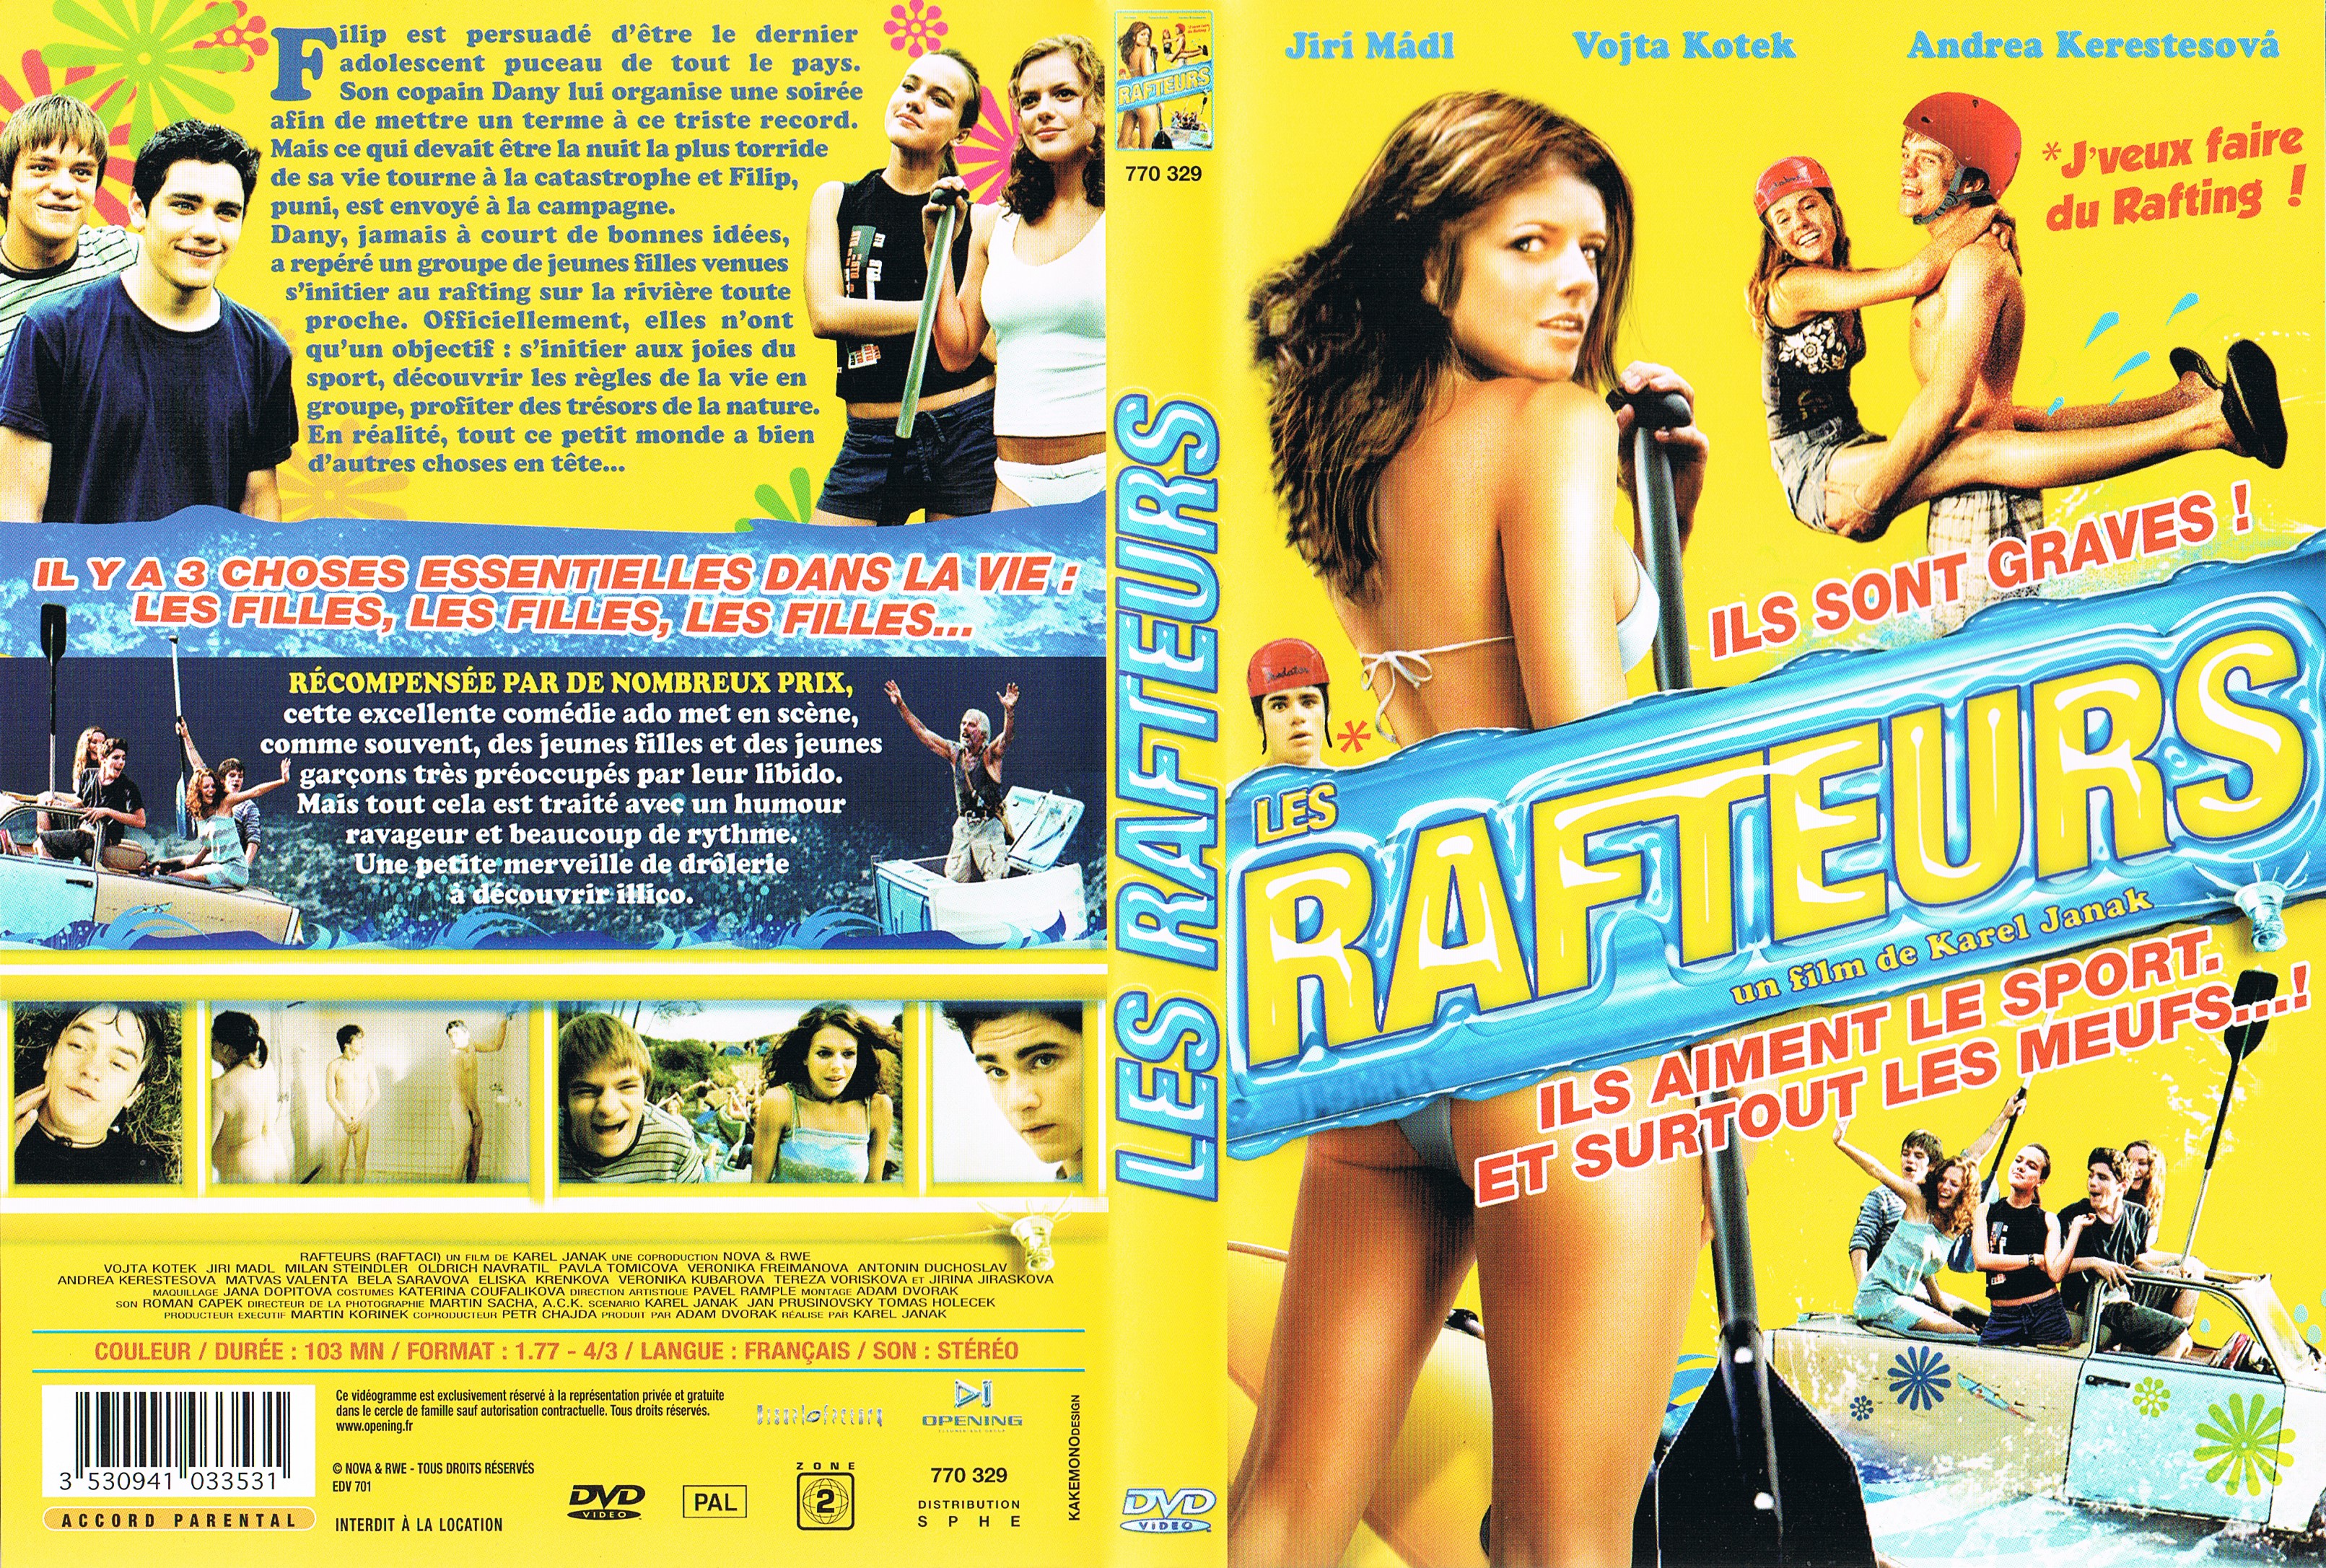 Jaquette DVD Les Rafteurs